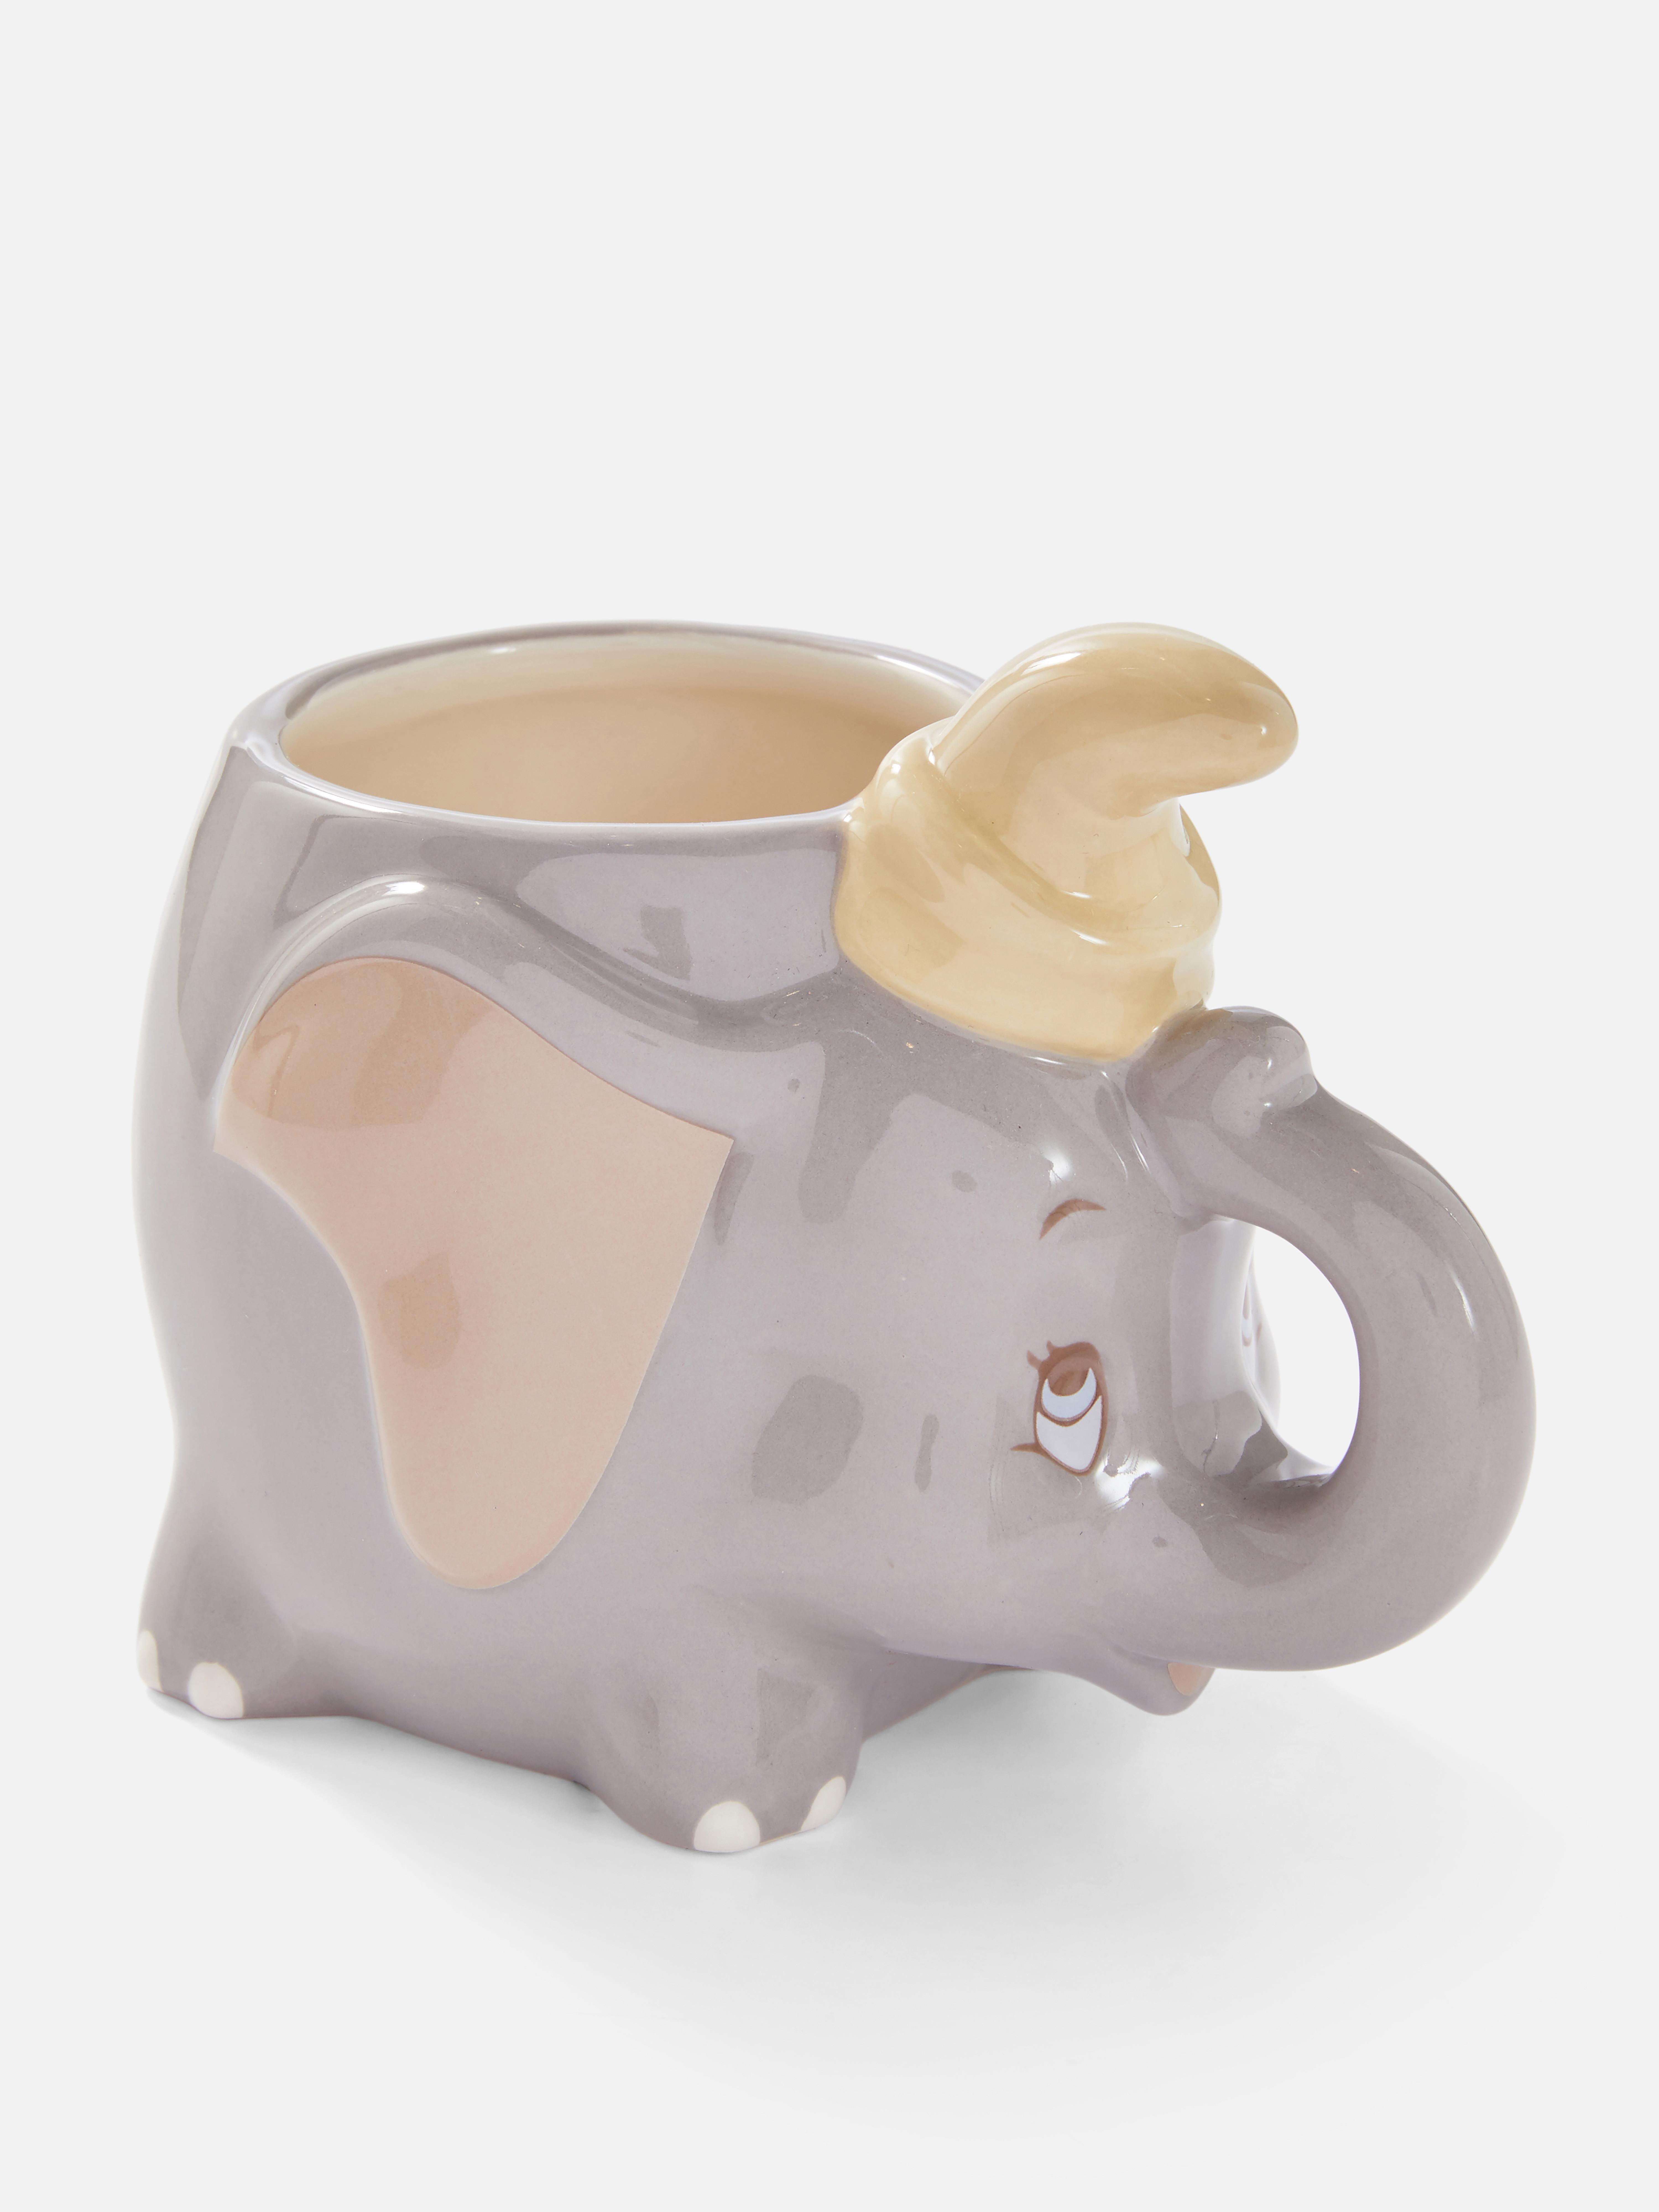 Disney's Dumbo Shaped Mug